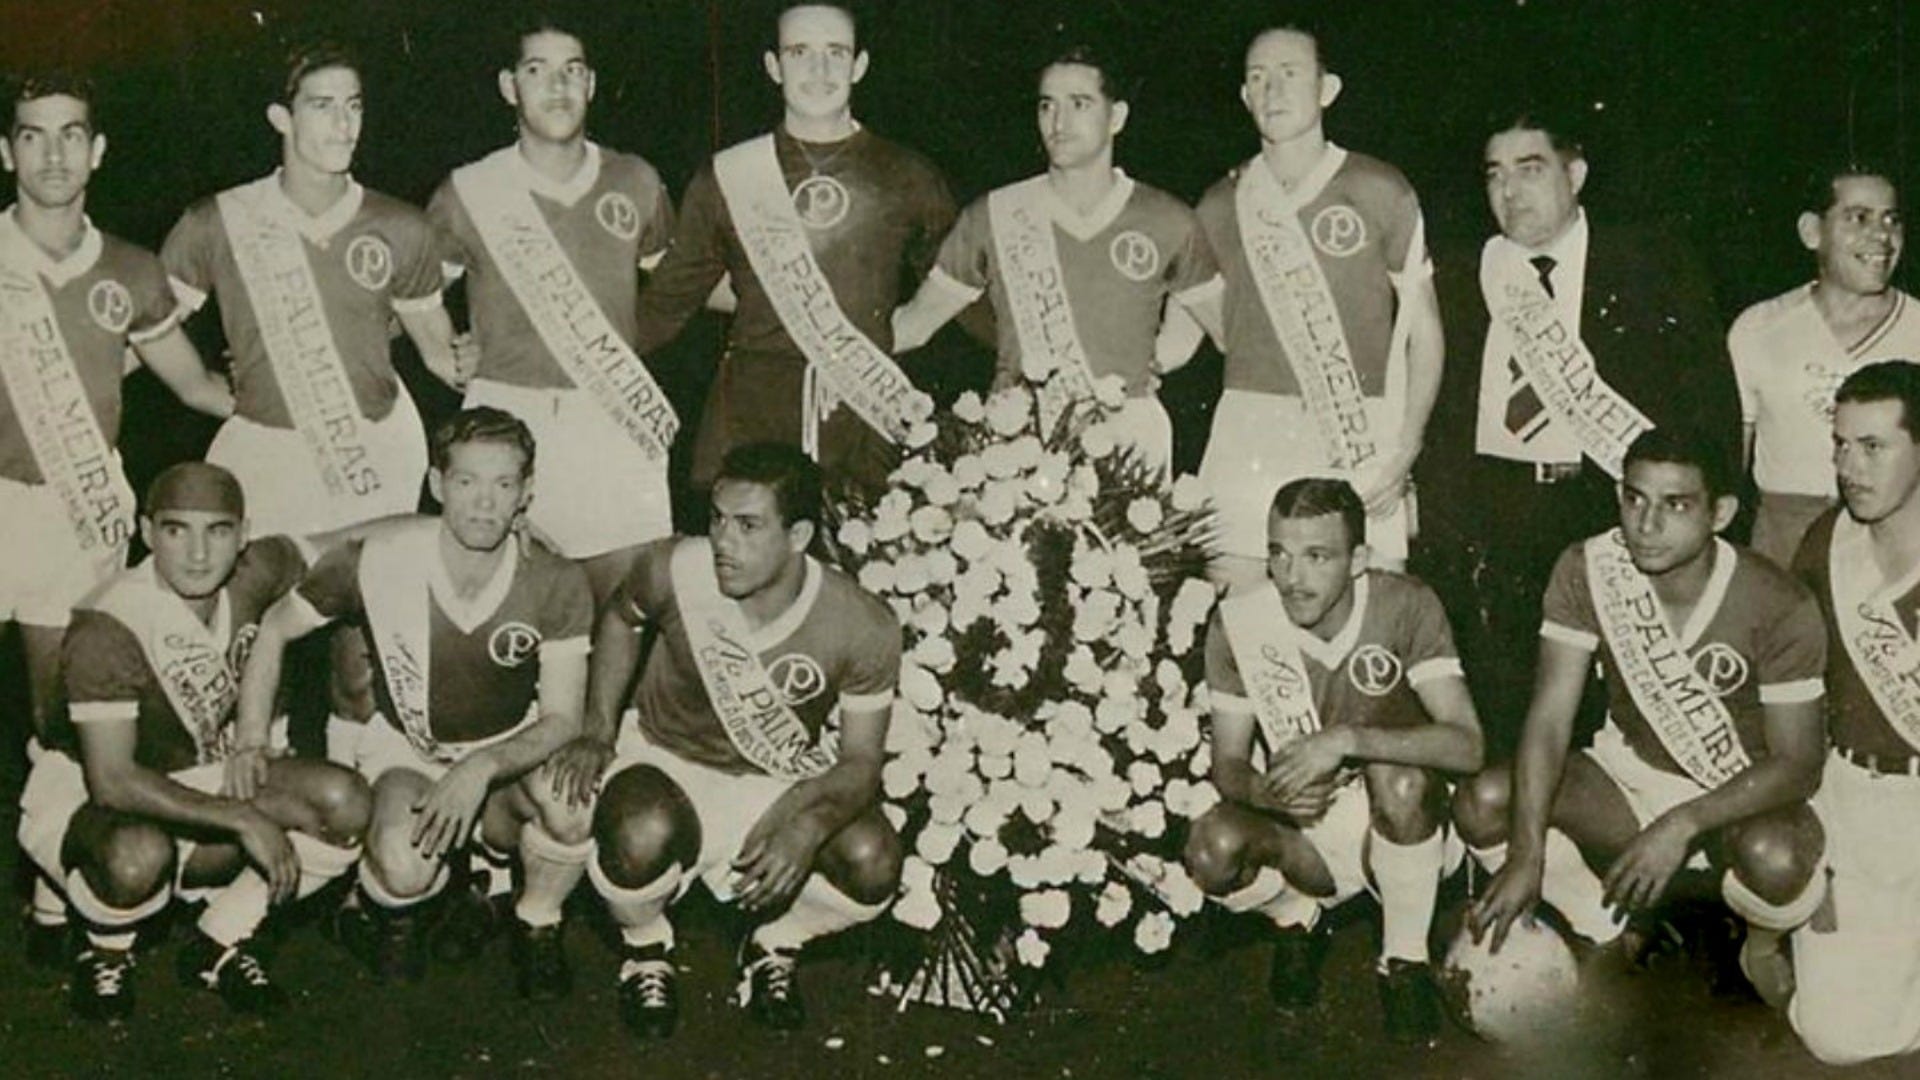 SE Palmeiras on X: O mundo pintado em verde e branco: Palmeiras, 1º campeão  mundial em 1951! #Palmeiras101anos  / X